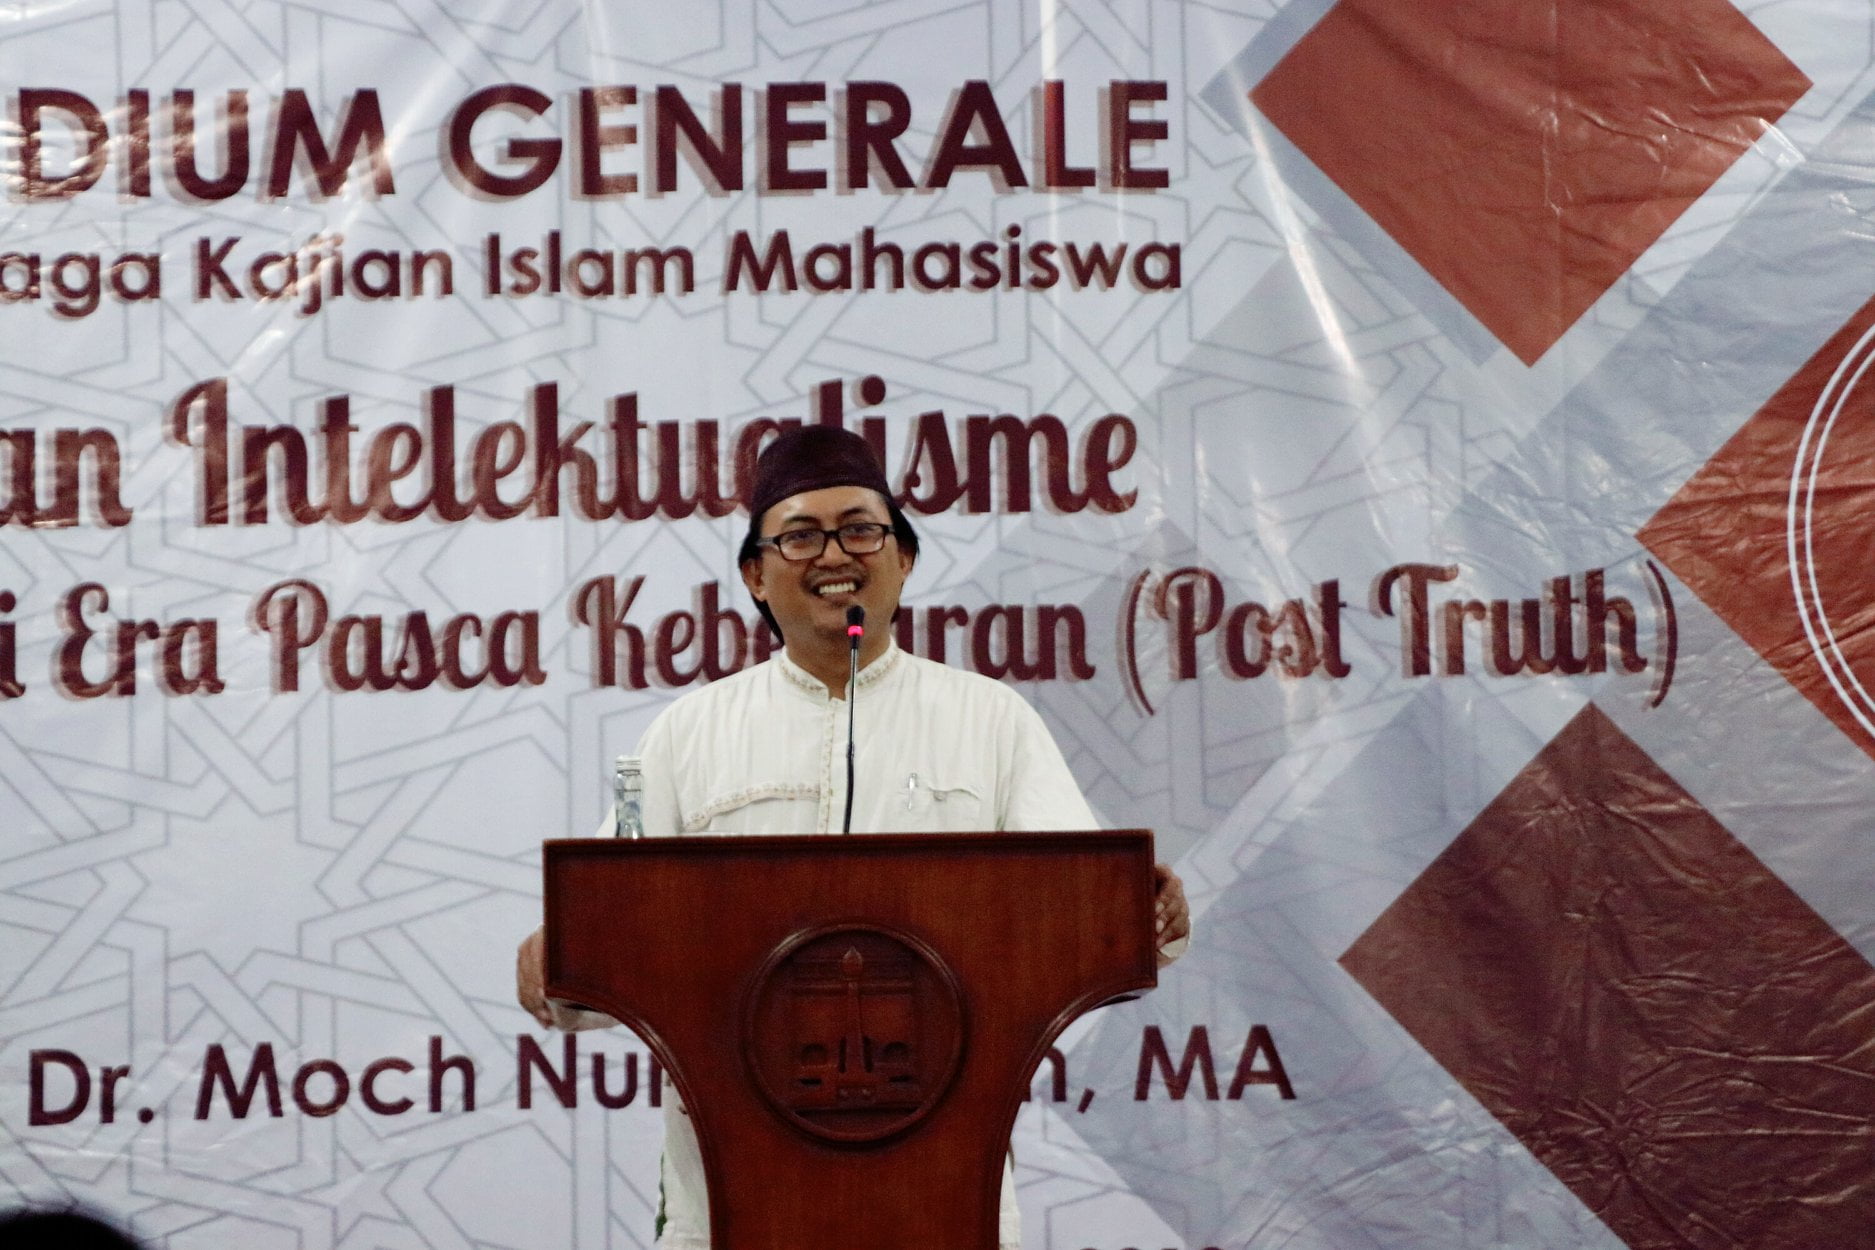 Diskusi Pesantren dan Post-Truth, Dr. Moch Nur Ichwan : Memahami Identitas Pesantren dan Kampanye Islam Moderat adalah Modal Utama Santri